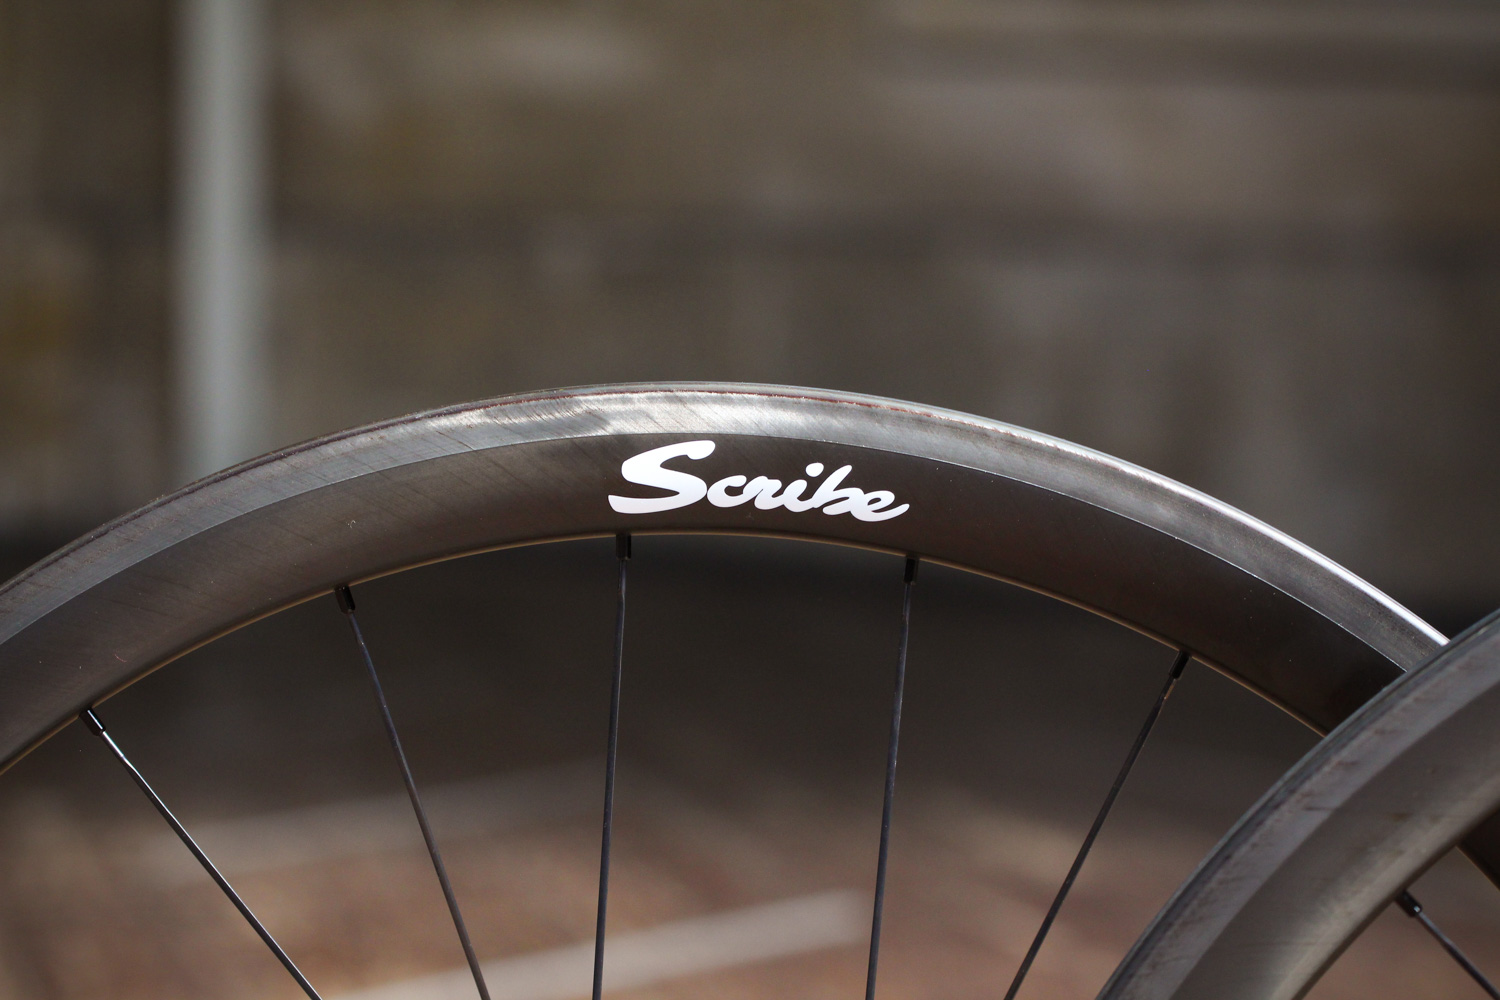 wide bicycle wheels